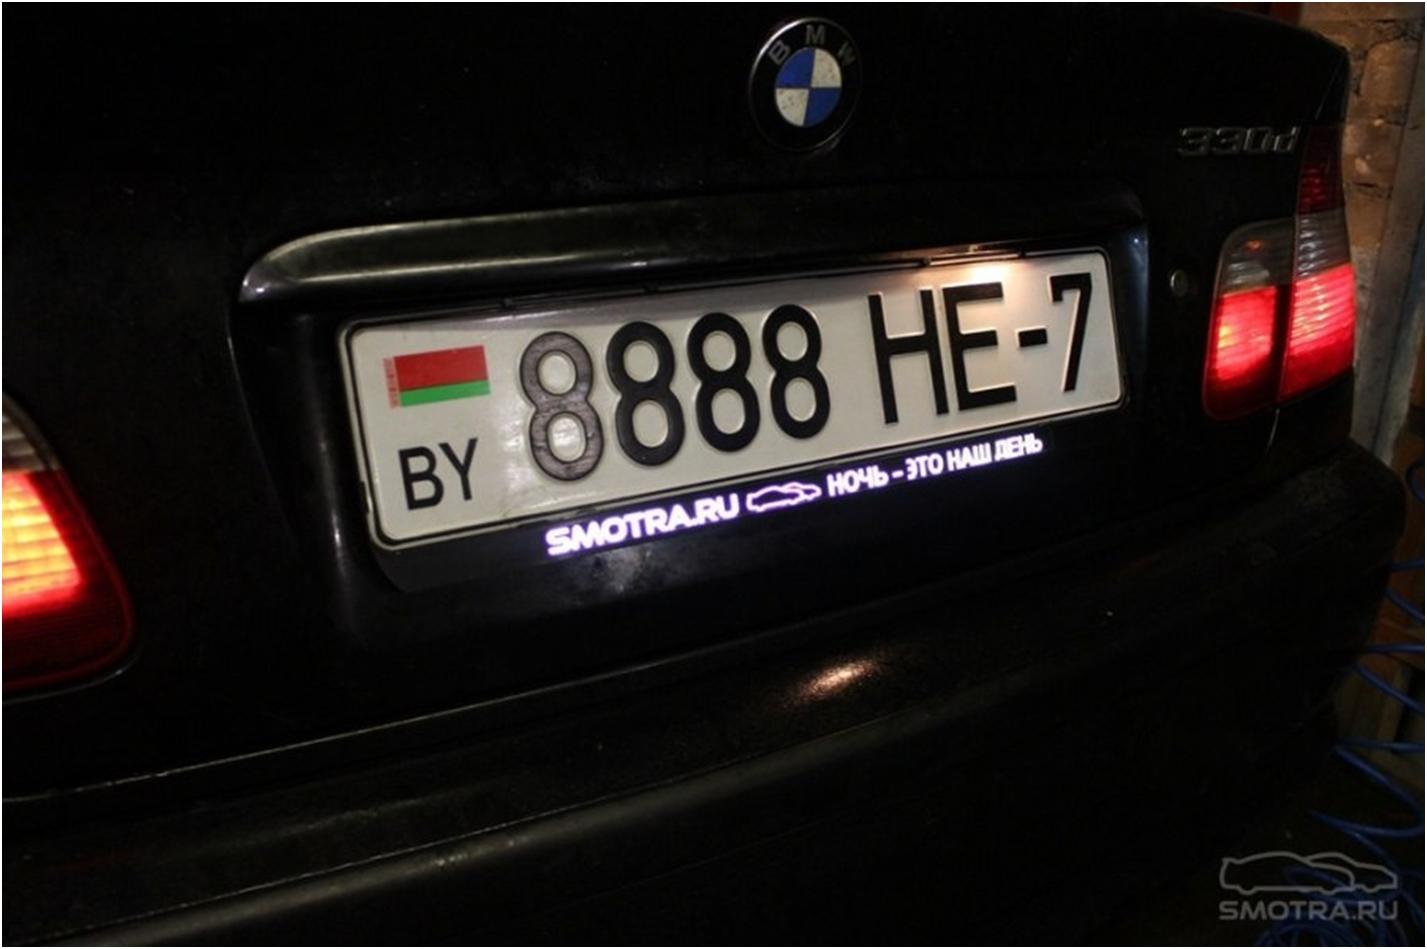 Электронные номера на машину. Рамка номерного знака BMW. Рамка номера 2101-07 с подсветкой. Рамка номерного знака с подсветкой номера.